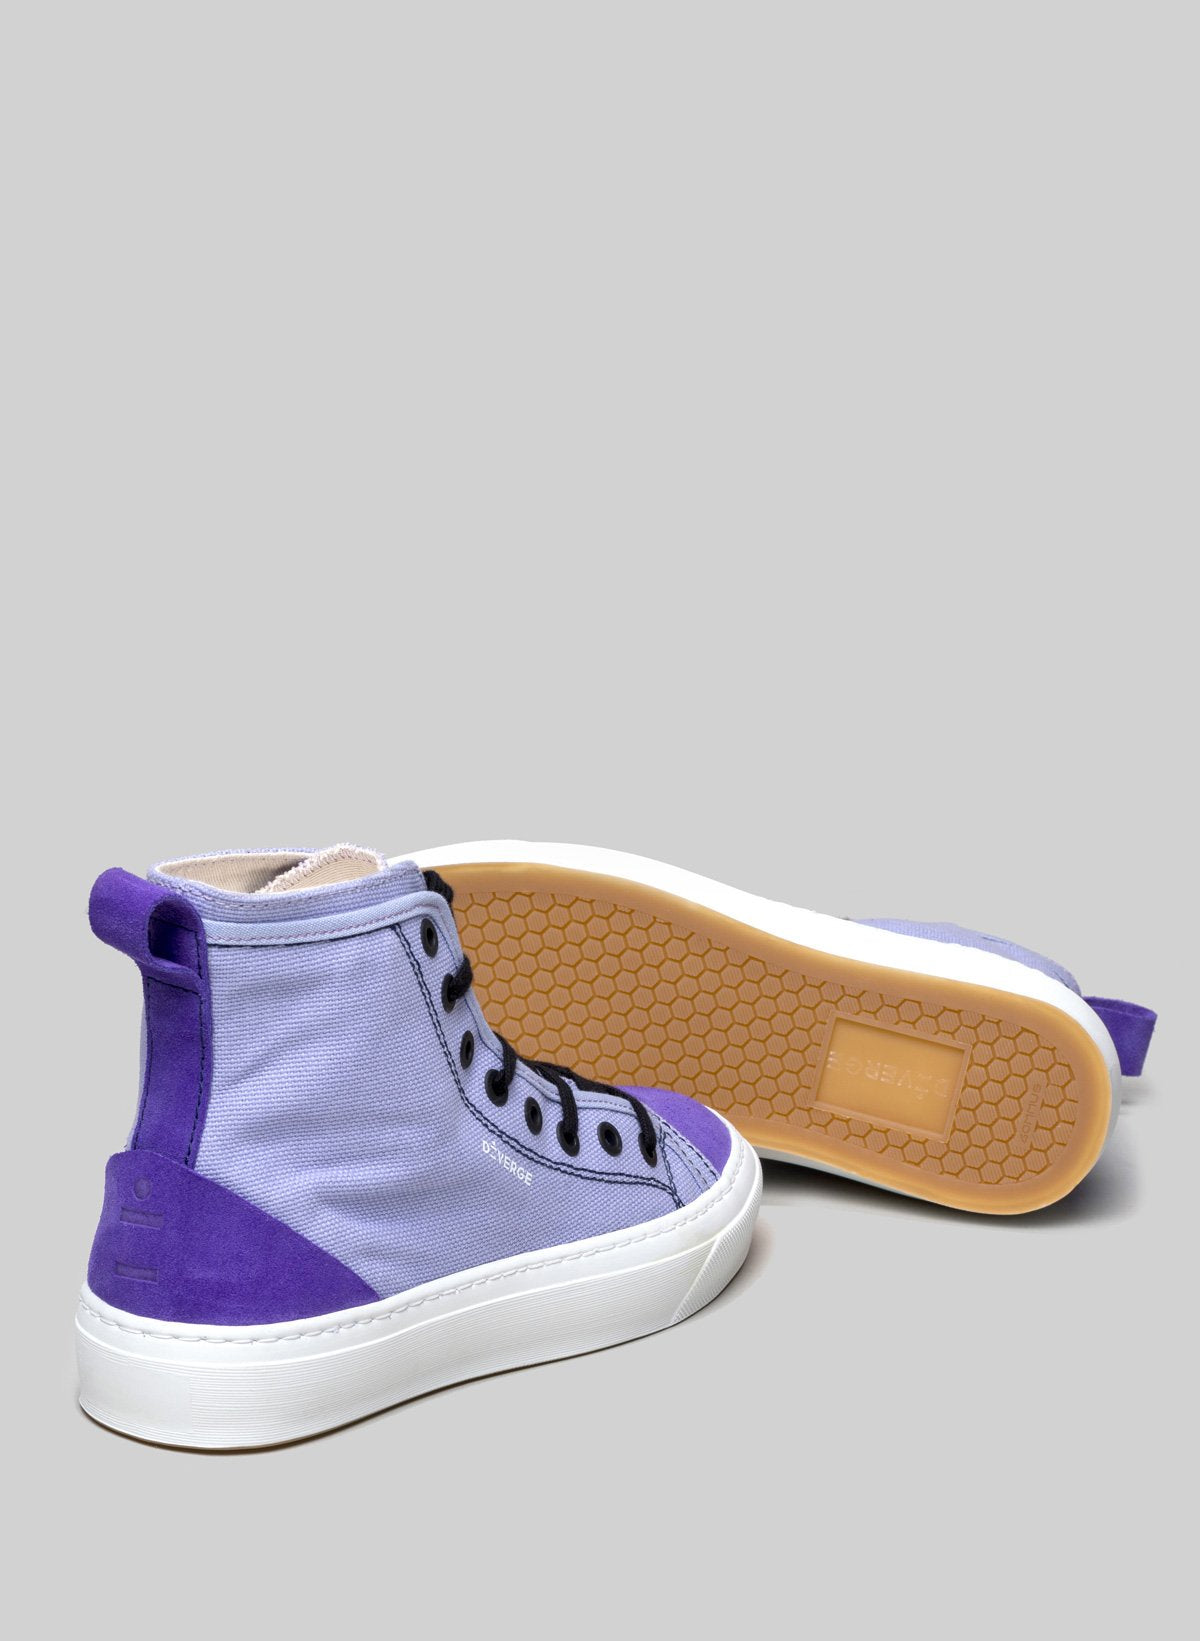 High top purple sneakers di Diverge, che promuove l'impatto sociale e le scarpe personalizzate attraverso il progetto imagine.